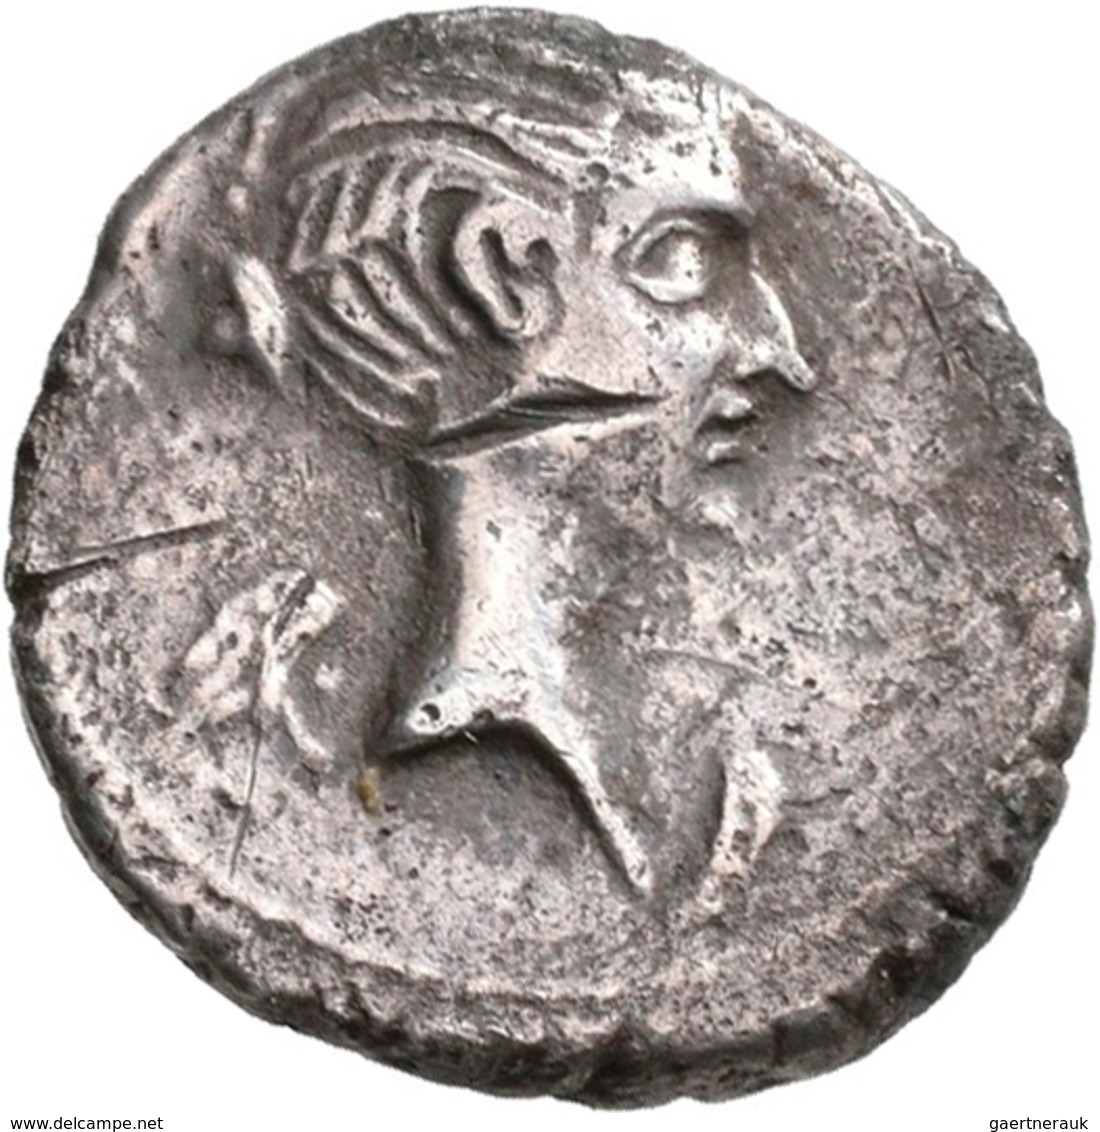 Antike: Lot 12 Silbermünzen, u. a. Makedonien, römische Republik und römische Kaiserzeit. Meist sehr